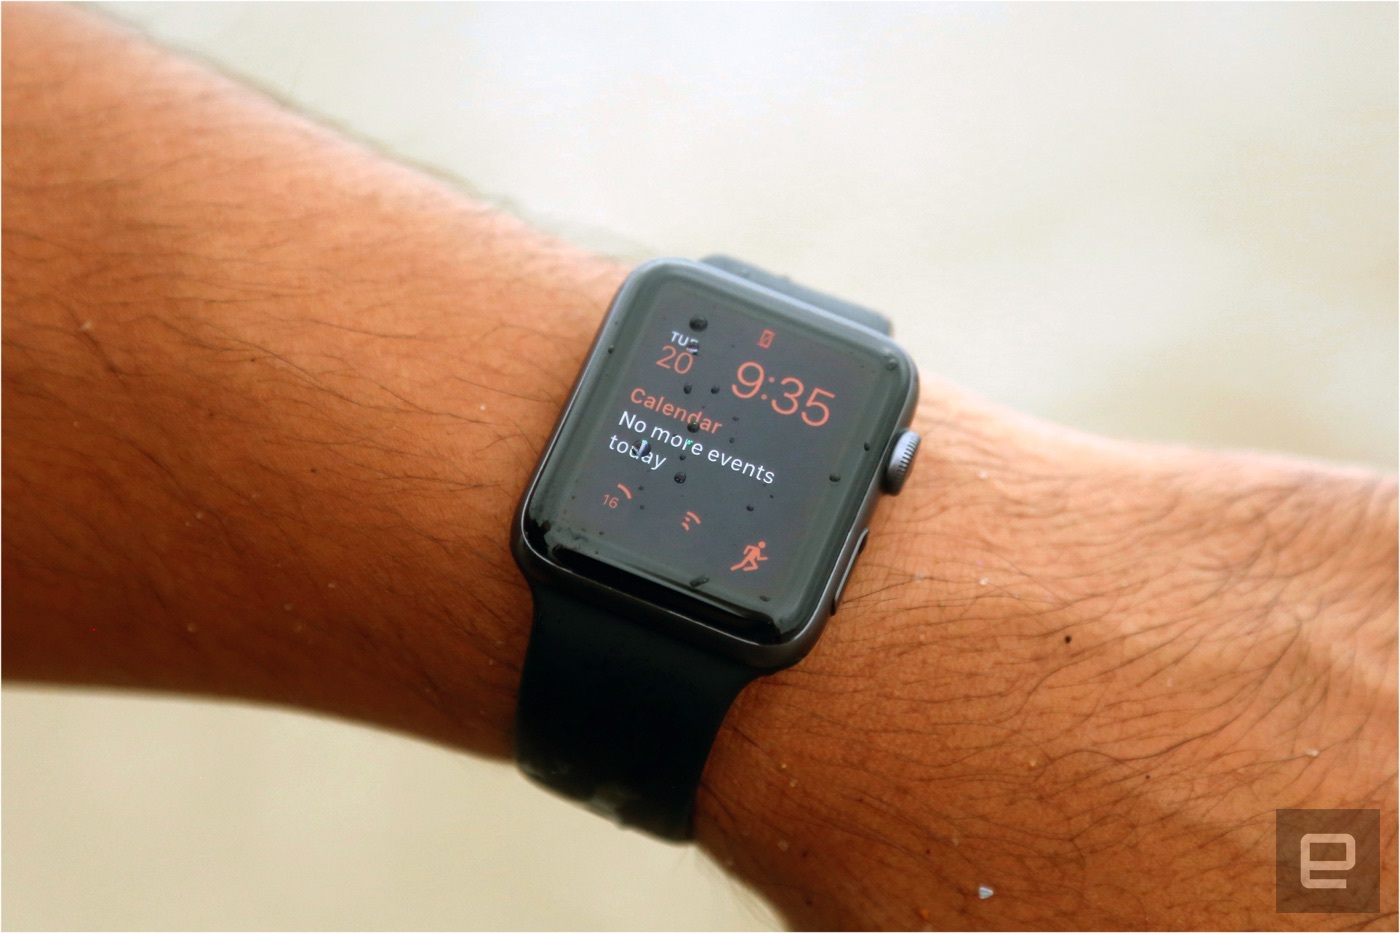 Apple Watch Series 2 review (as written by a marathoner) | Engadget